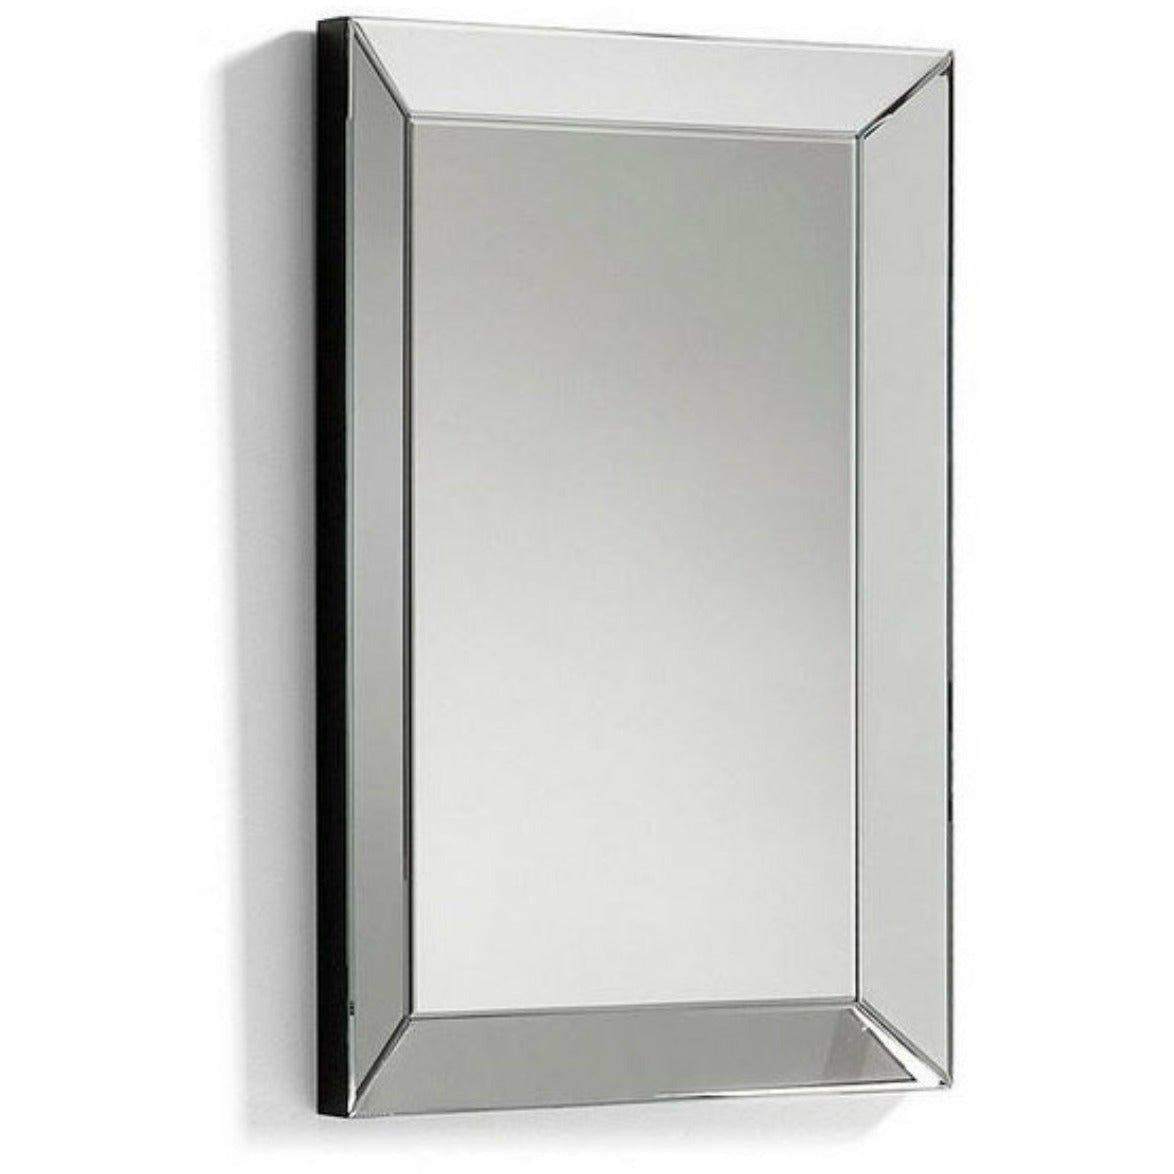 Wandspielgel Spiegel mit Spiegelkante 60x80 cm - HomeDesign Knaus